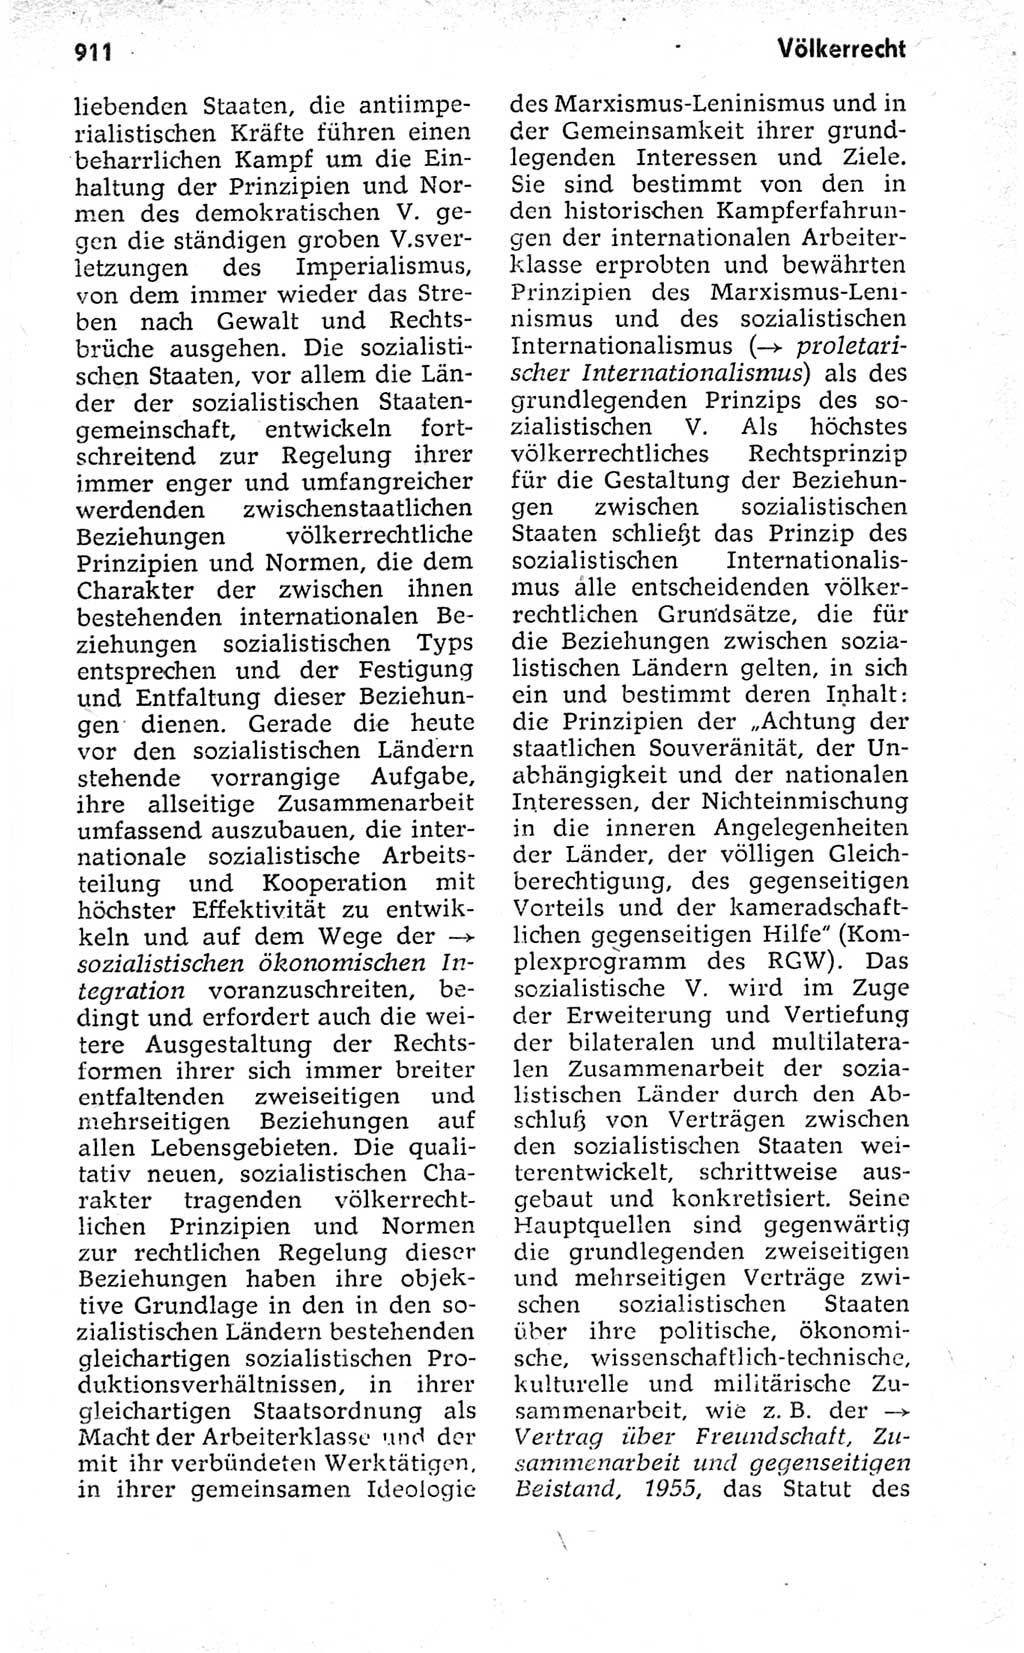 Kleines politisches Wörterbuch [Deutsche Demokratische Republik (DDR)] 1973, Seite 911 (Kl. pol. Wb. DDR 1973, S. 911)